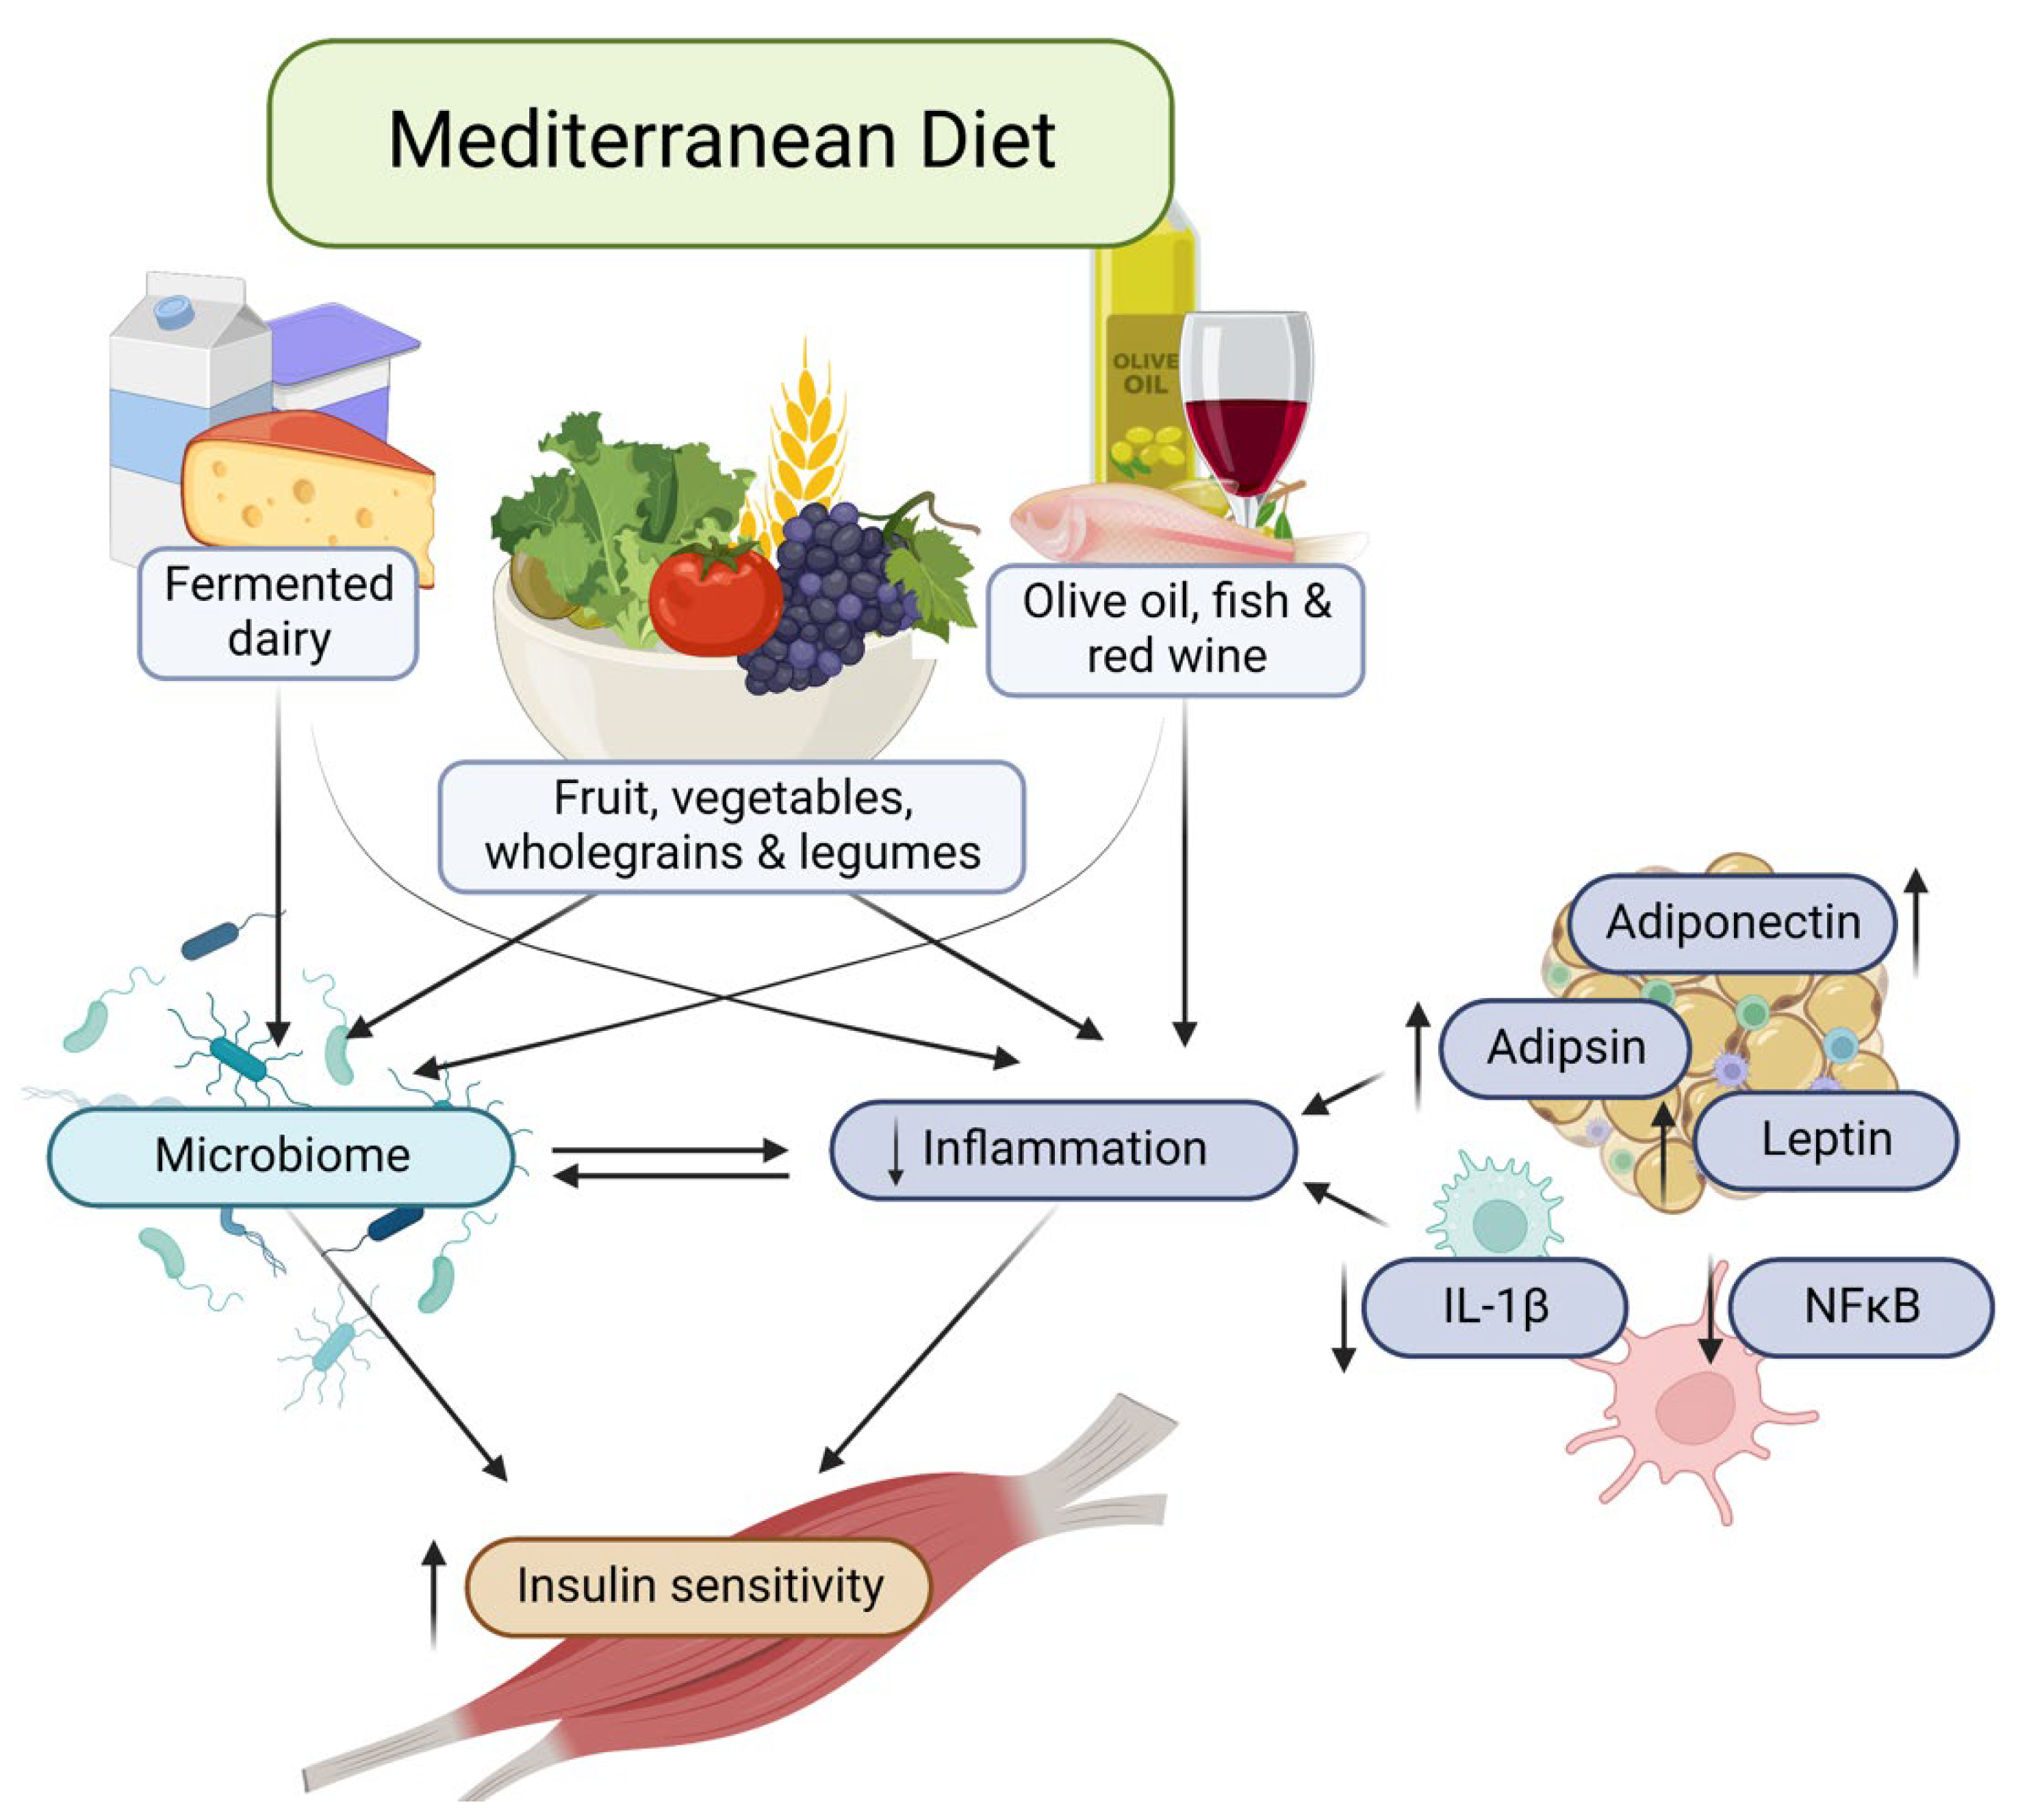 Mediterranean diet and inflammation